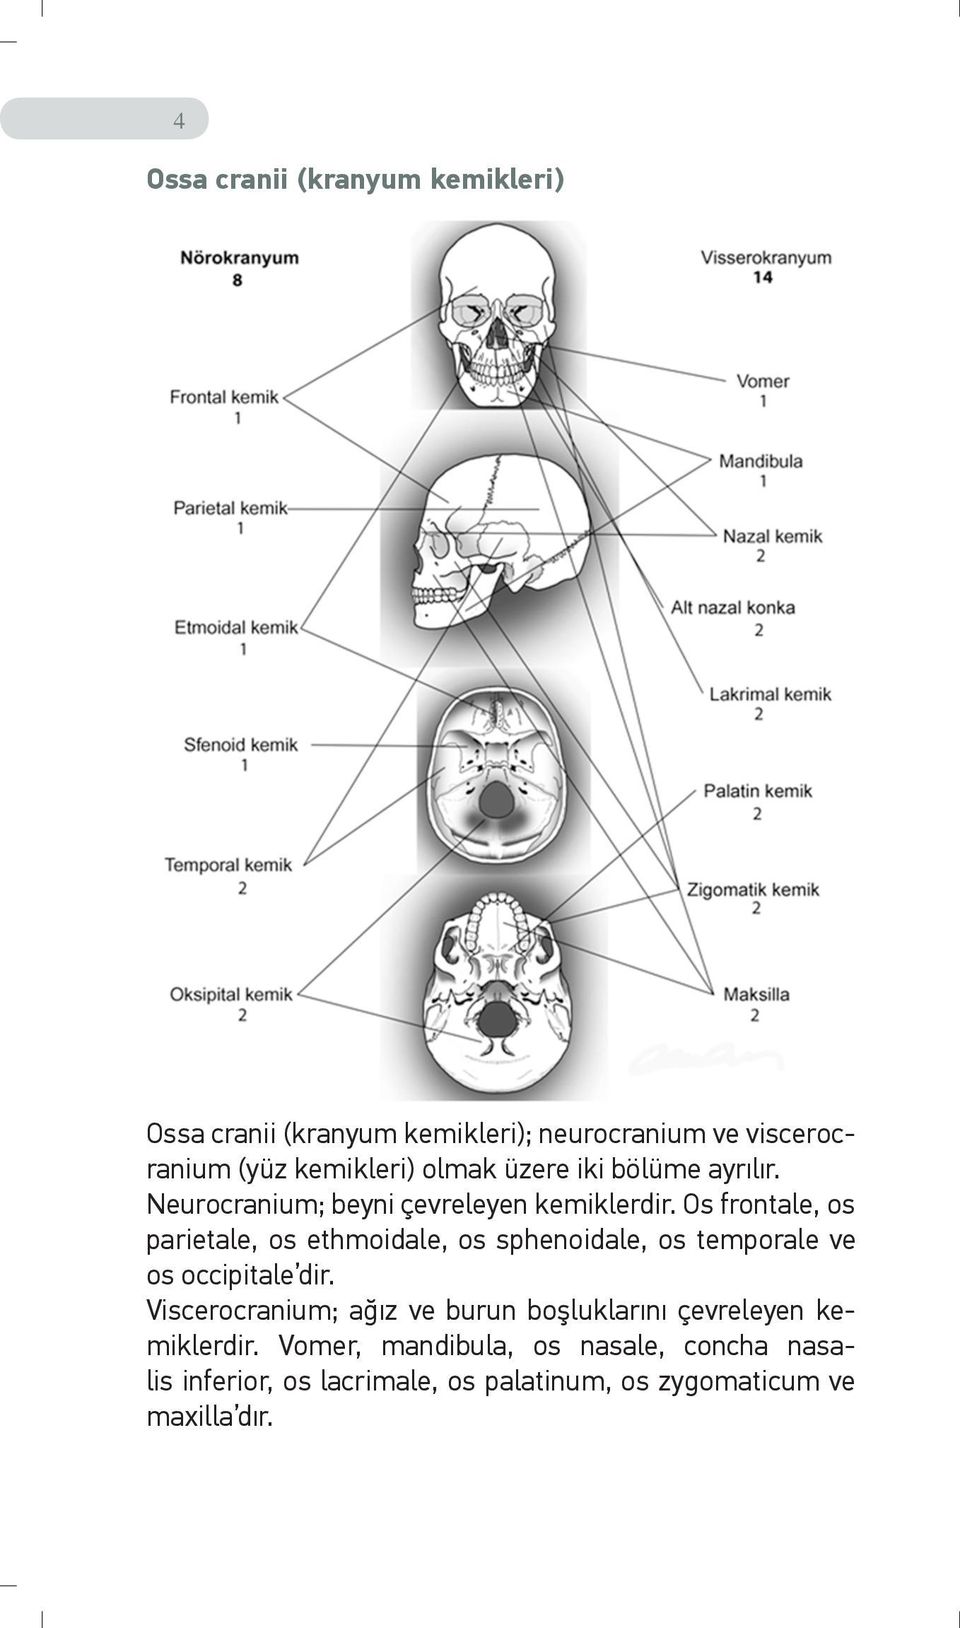 Os frontale, os parietale, os ethmoidale, os sphenoidale, os temporale ve os occipitale dir.